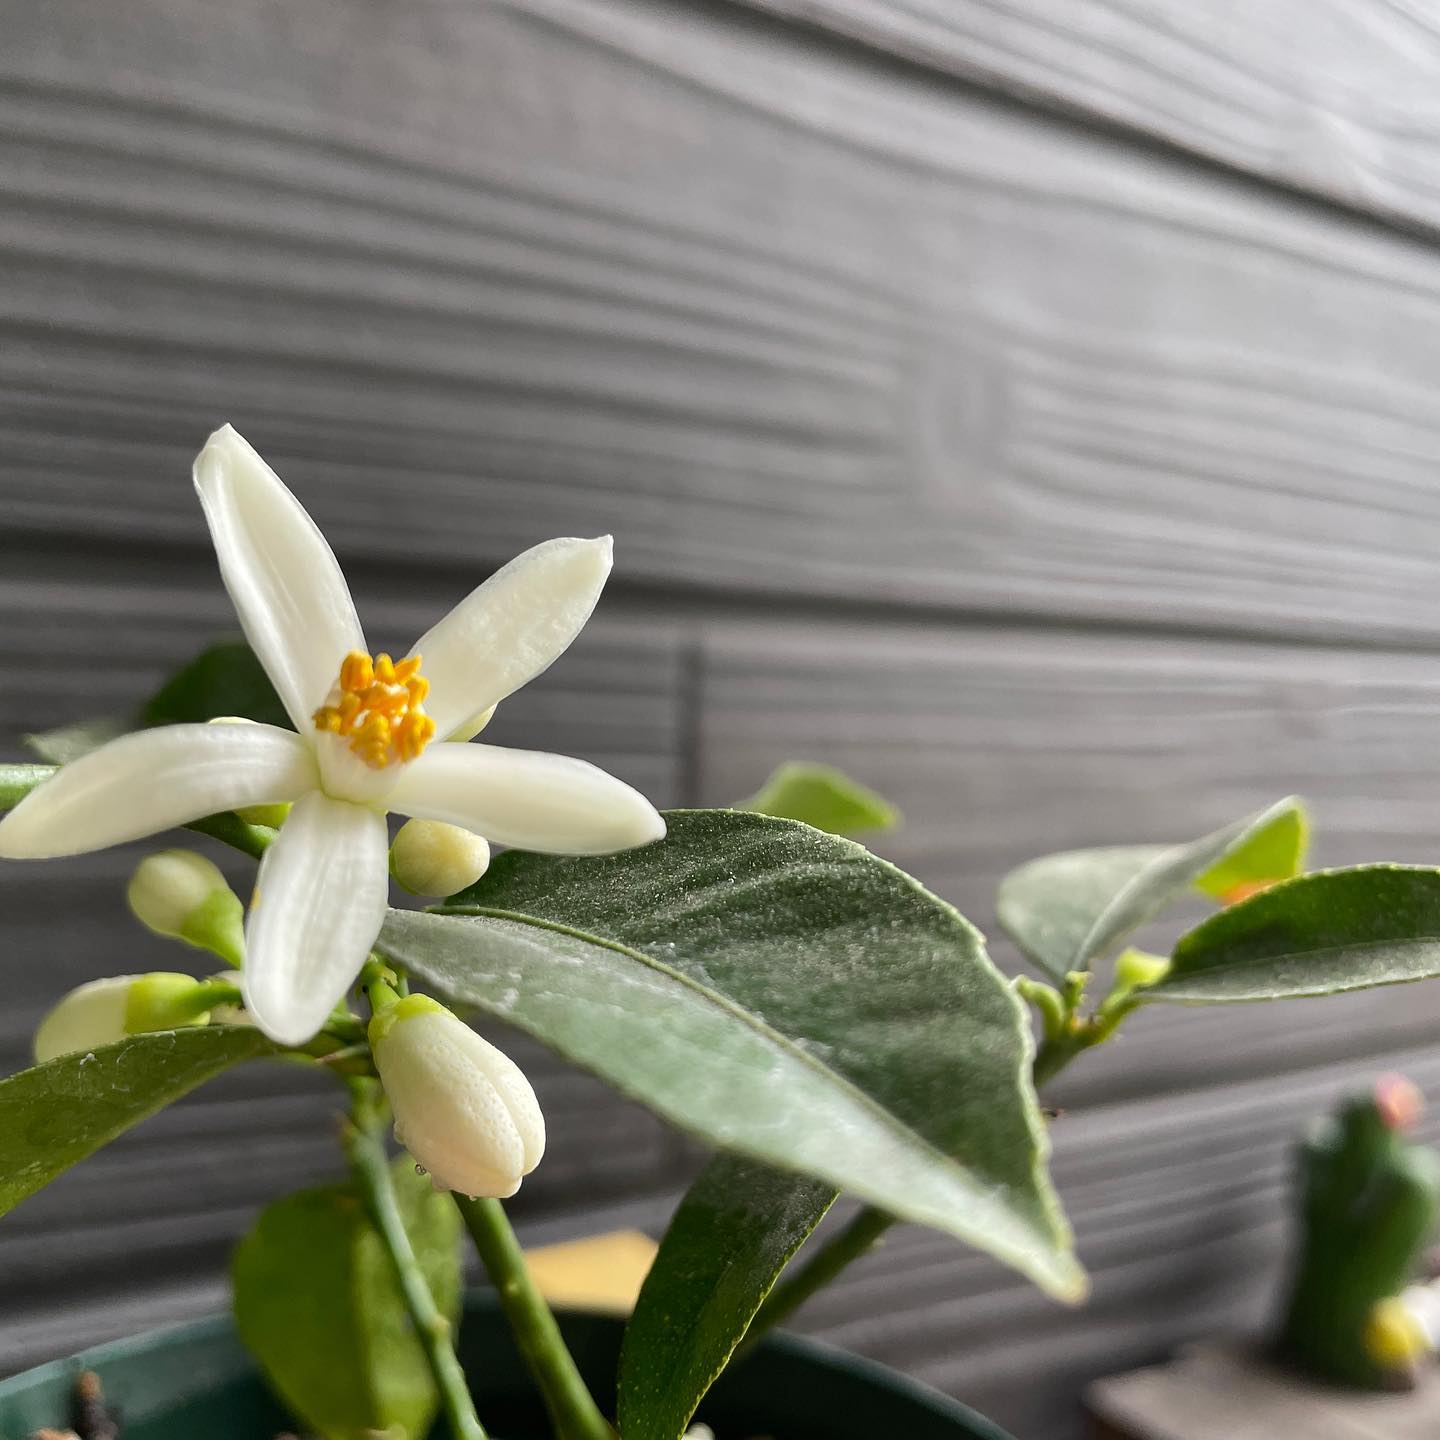 🍋ウチで育て始めて3年目、まだまだ小さい状態ですが、スイートレモンの花が咲きました! 15センチほどの木ですが、沢山の花、嬉し♡ #lemon #gardening #floweroftheday #スイートレモン #はなまっぷ